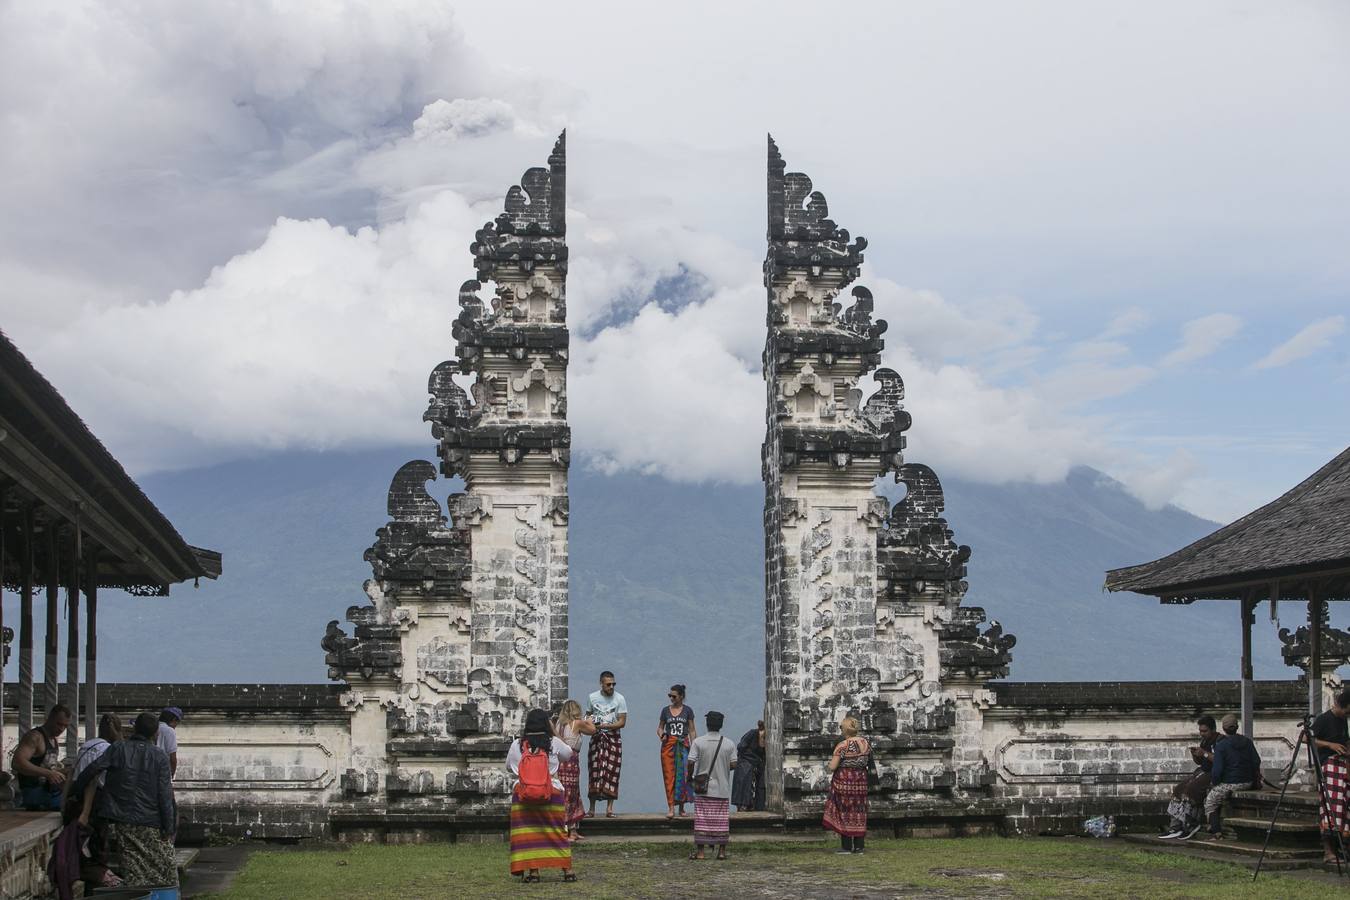 El volcán Monte Agung arroja ceniza volcánica caliente en Karangasem, Bali (Indonesia). Según informes de medios, la junta nacional de gestión de desastres de Indonesia elevó la alerta para el volcán al estado más alto y cerró el aeropuerto internacional Ngurah Rai en Bali debido a la nube de cenizas.